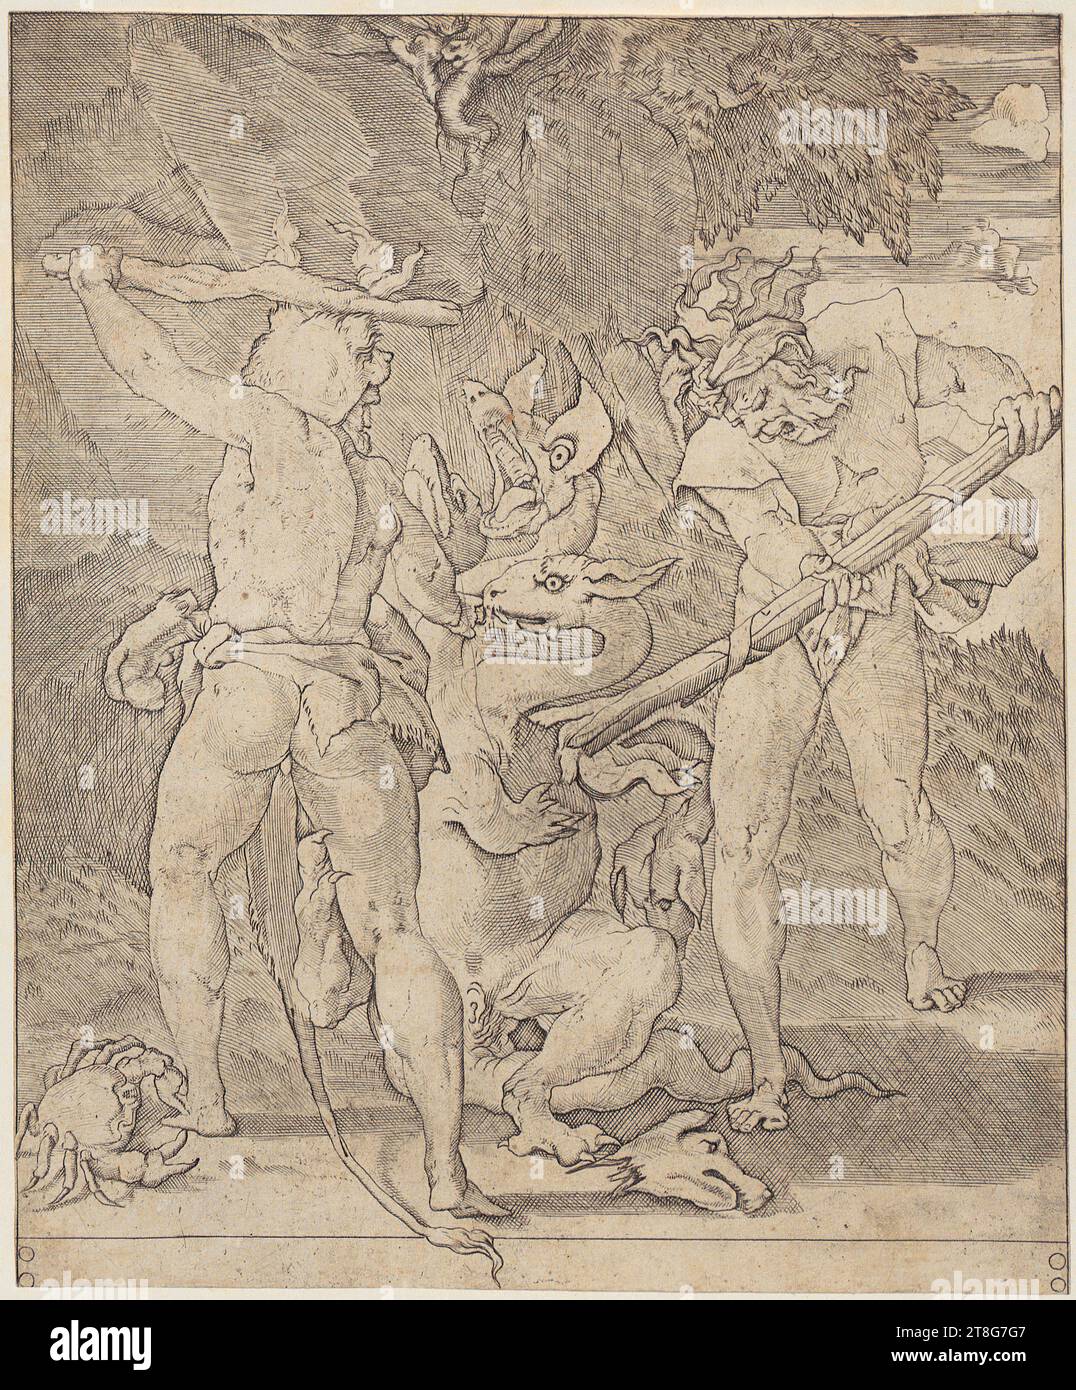 Giovanni Giacomo Caraglio (1505 UM - 1565)Rosso Fiorentino (1494 - 1540), après, Hercule tue l'Hydre de Lerna, feuille 3 de la série 'les travaux d'Hercules', origine de l'impression : 1520 - 1539, gravure sur cuivre, taille de la feuille : 21,6 x 17,9 cm Banque D'Images